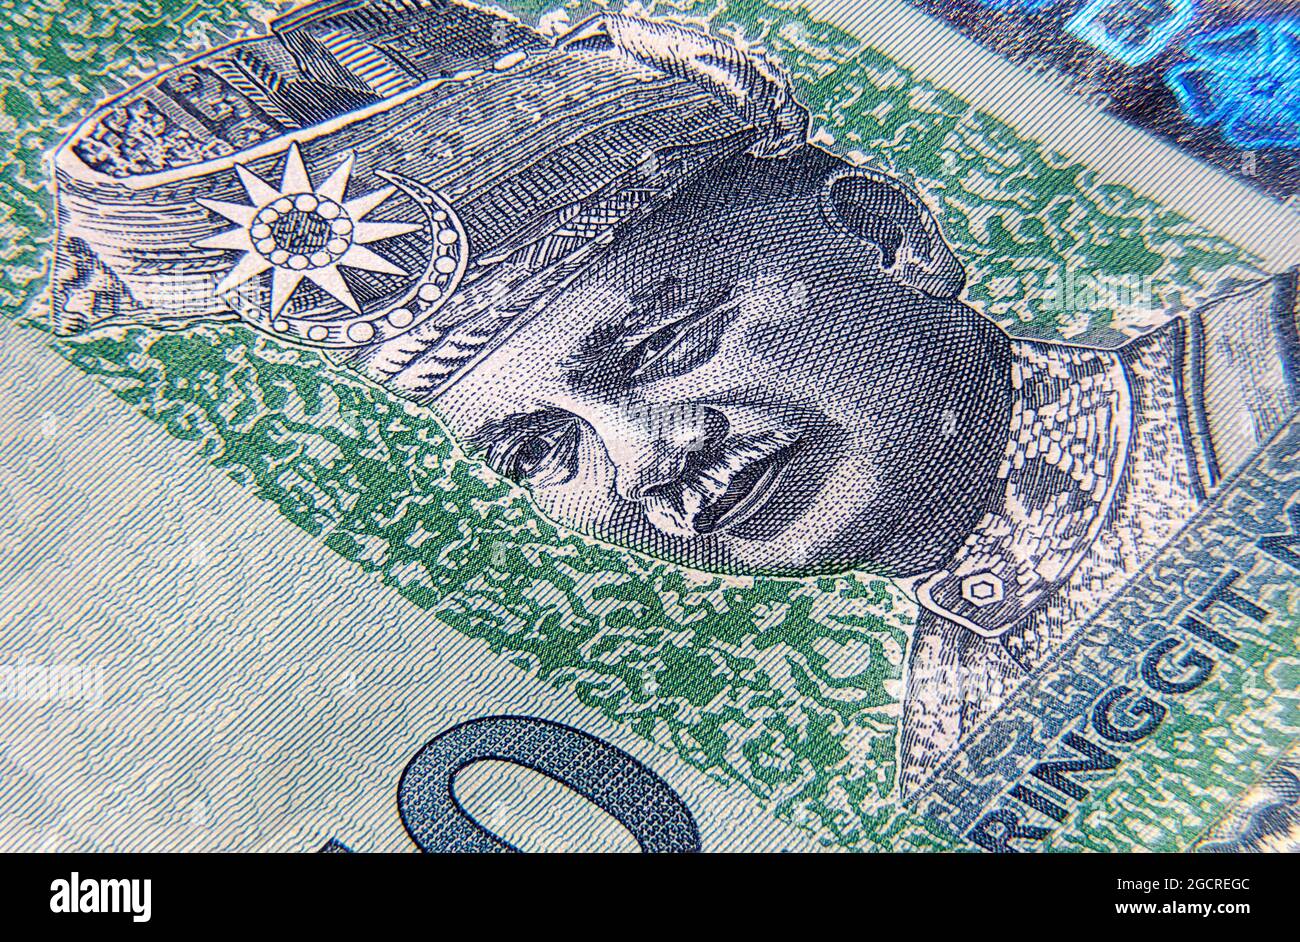 Super Makro-Fotografie von 50 ringgit Malaysia. Extreme Nahaufnahme auf einer 50 RM Banknote. In der Mitte die großen 50. Auf der einen Seite die rote Hibiskusblüte auf der Stockfoto